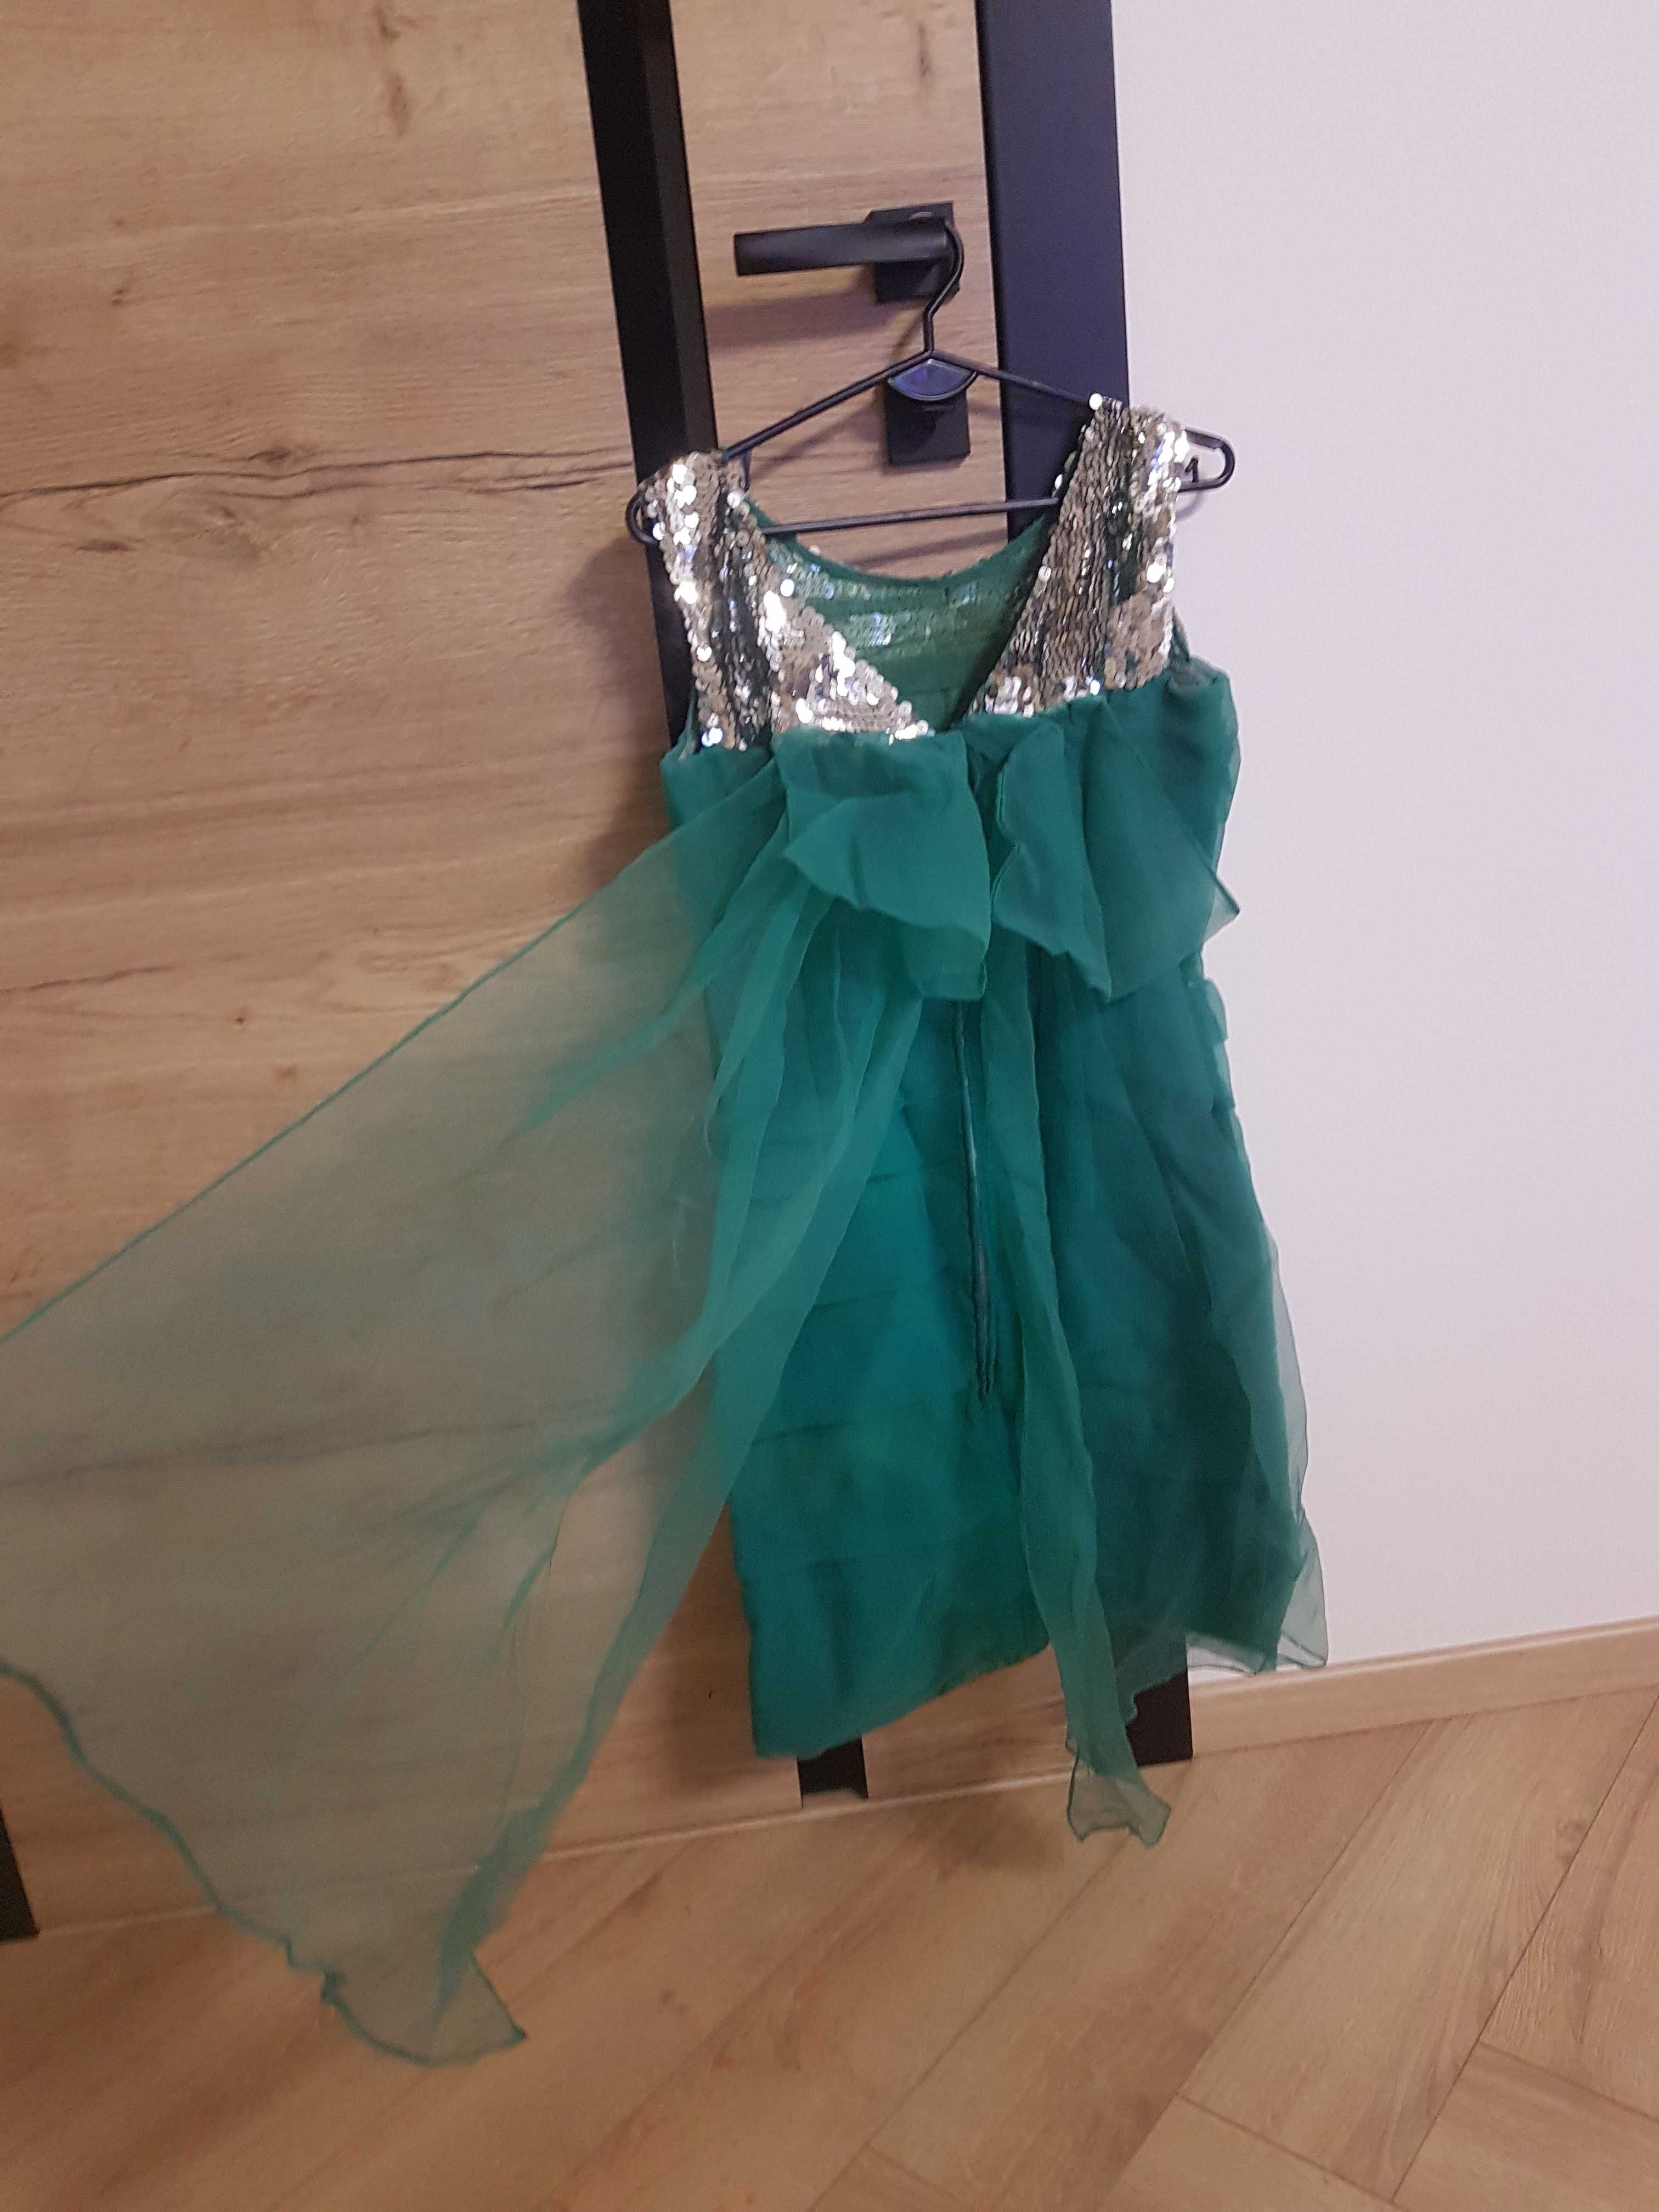 Sukienka zielona wieczorowa tiulowa srebrne cekiny sylwester 36-38